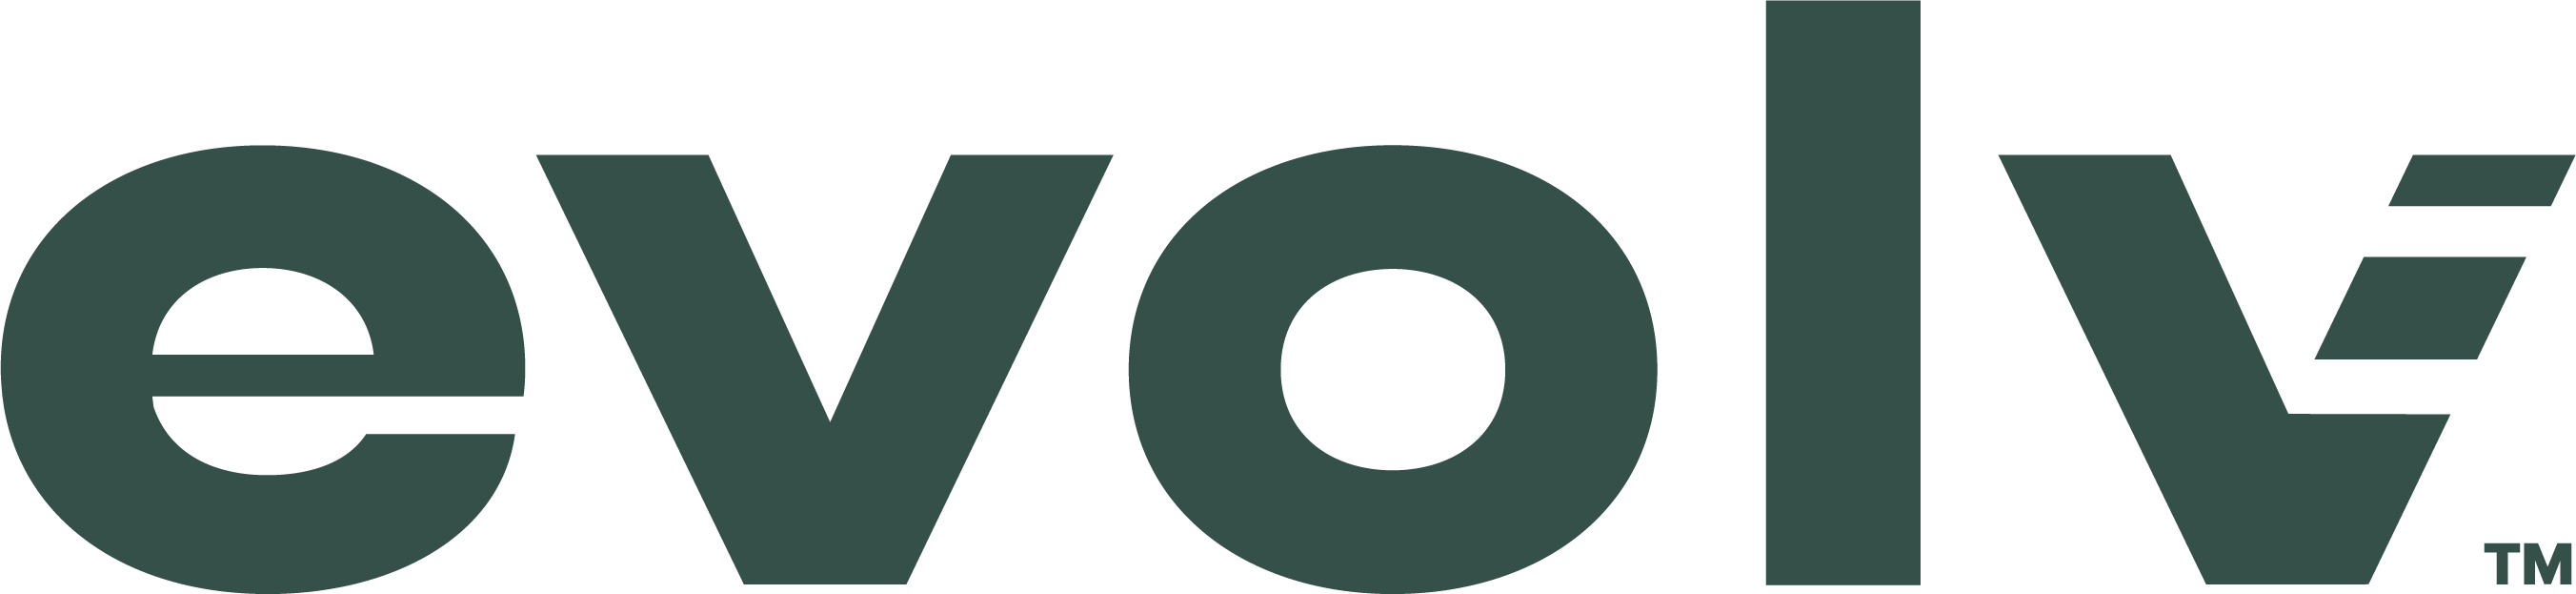 Evolv Logo (Gold Sponsor).png